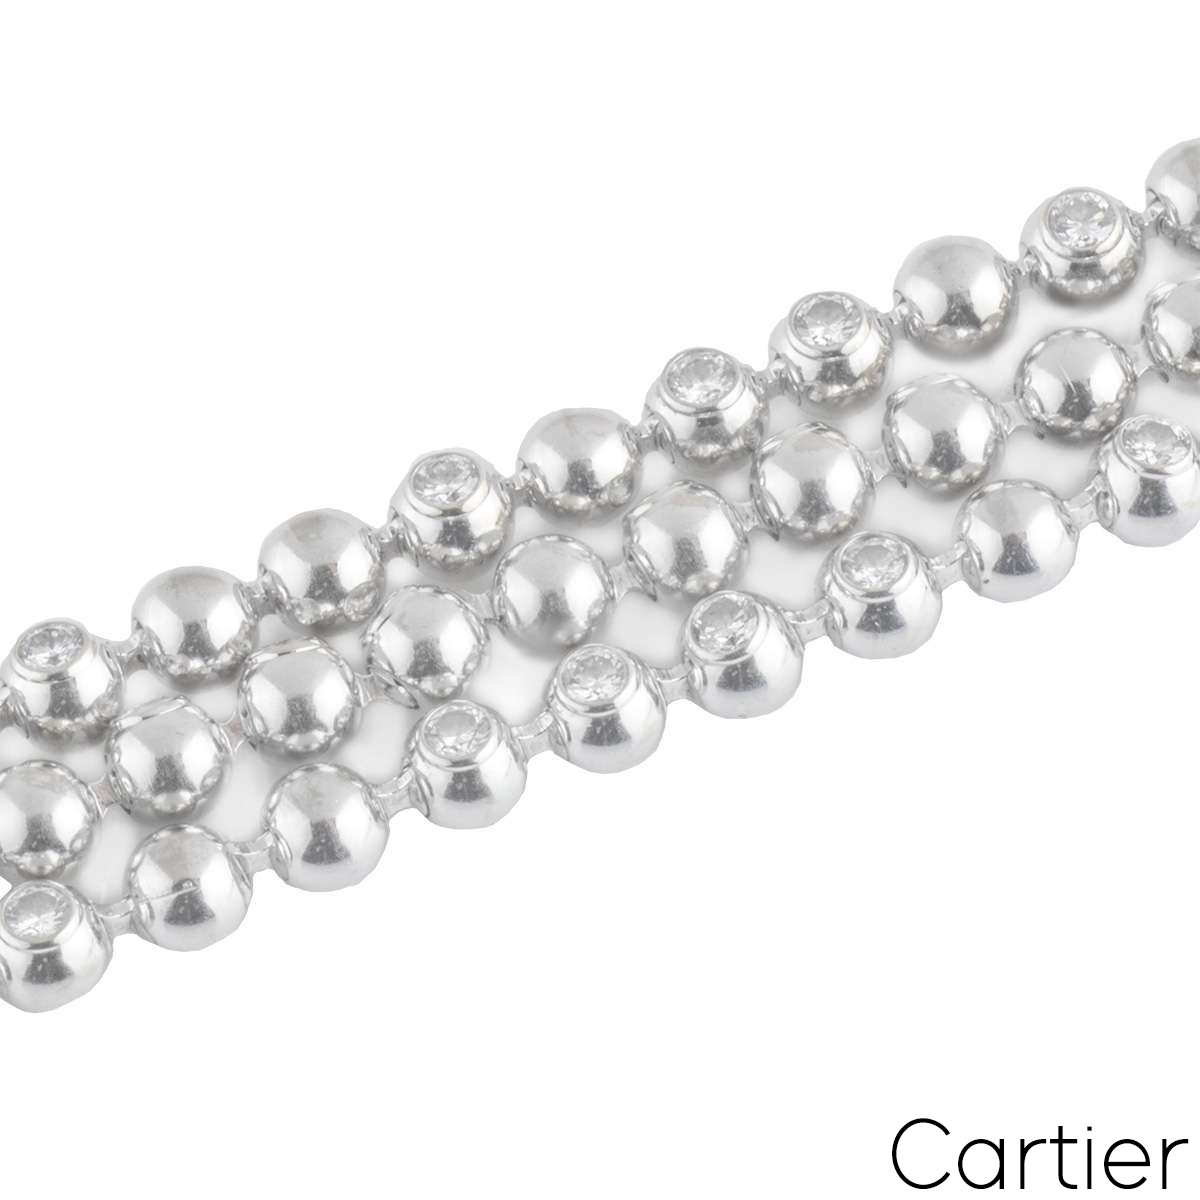 cartier diamond necklace